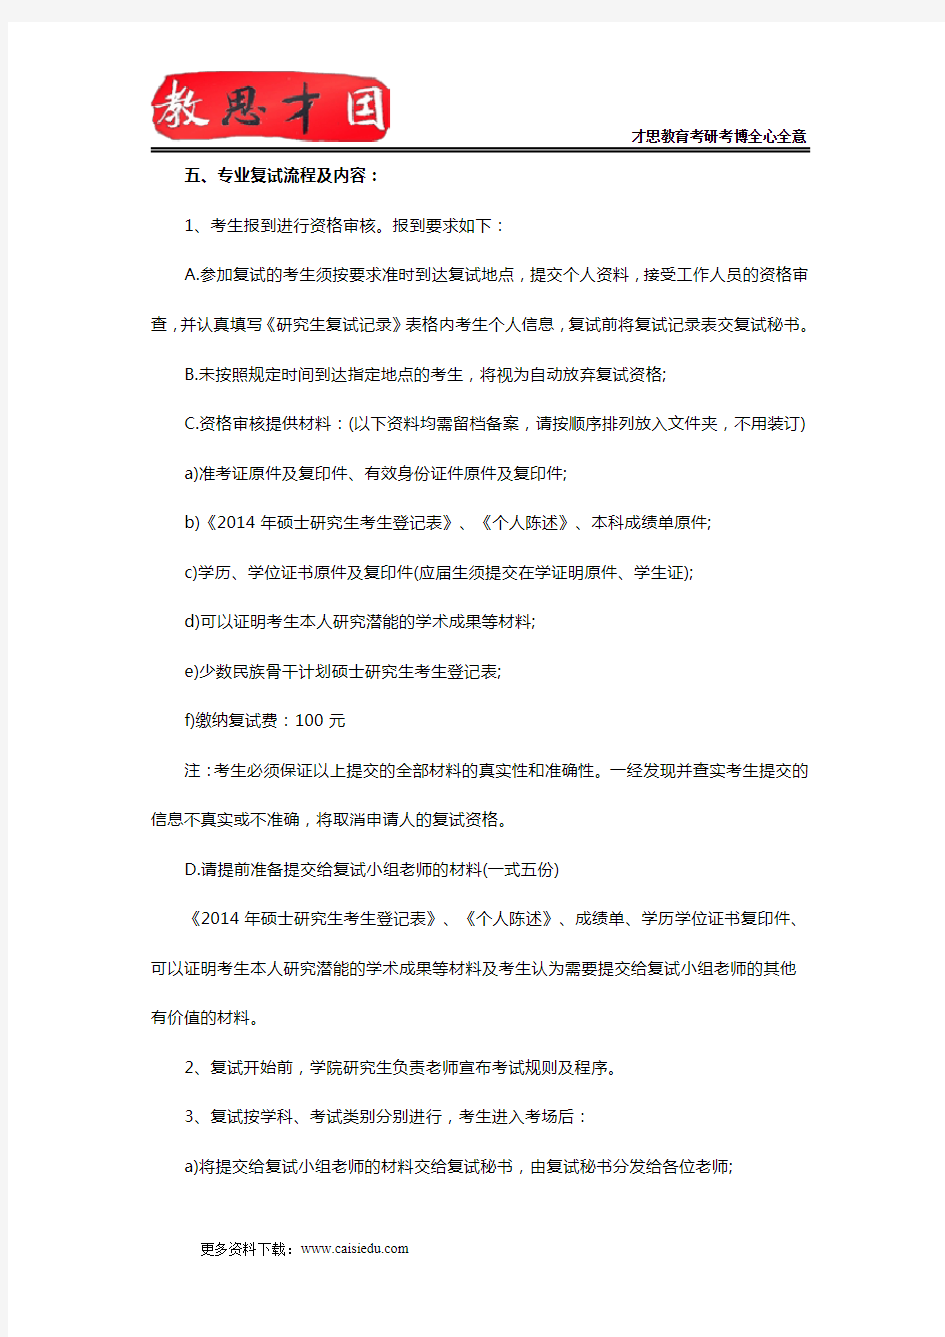 2014北京大学政府管理学院考研复试方案,考研复试流程